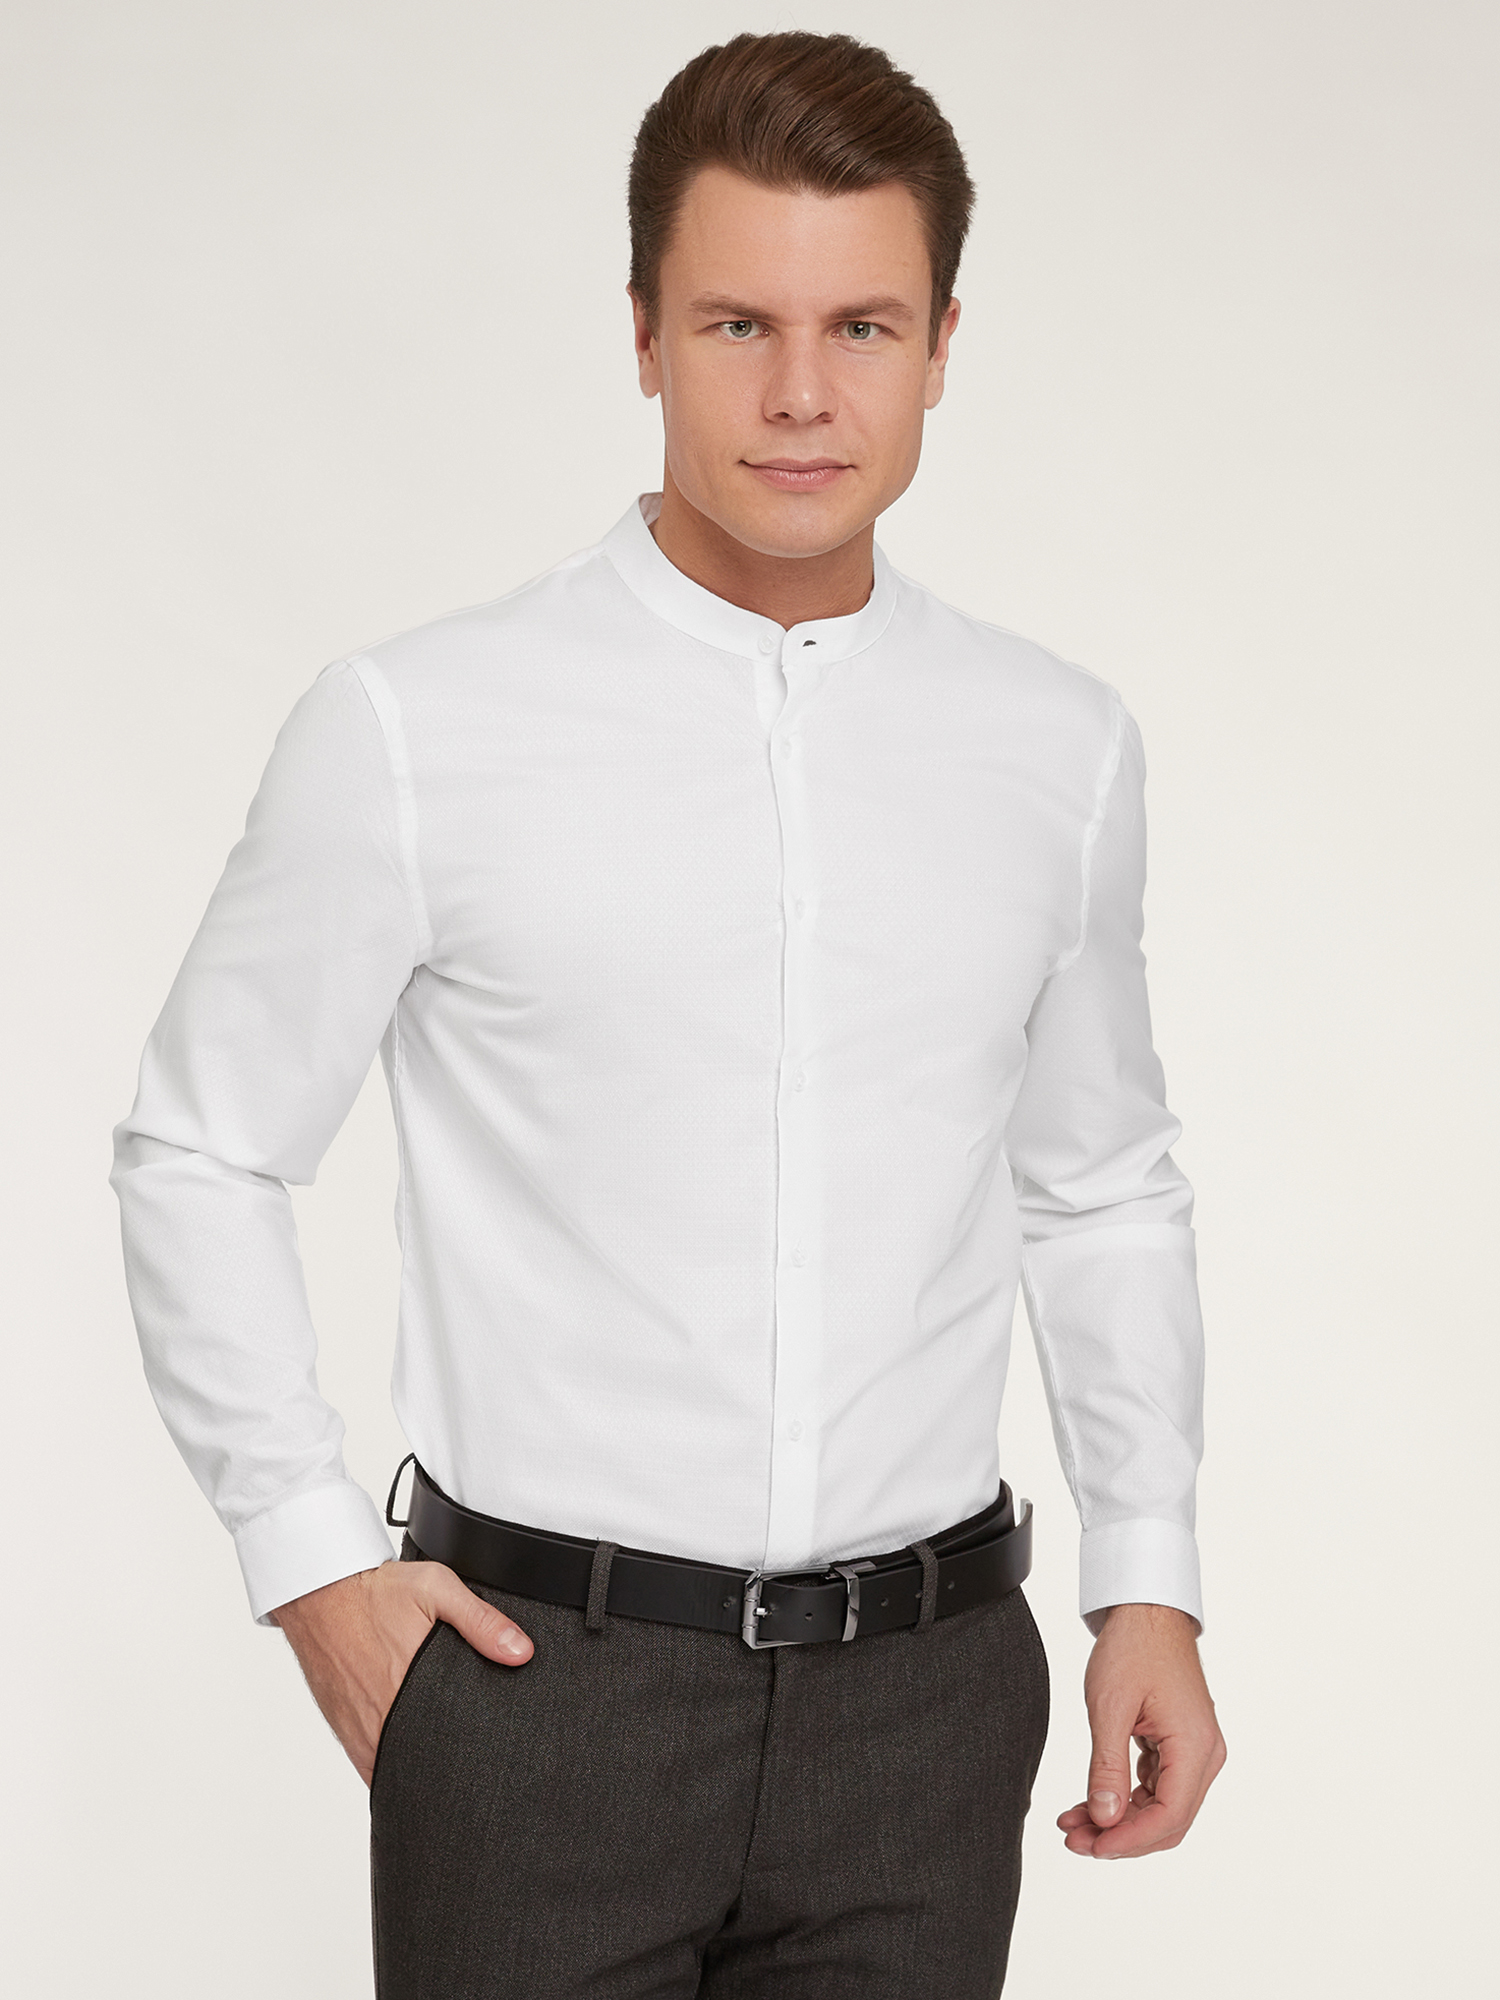 Рубашка мужская oodji 3B140004M-1 белая XL